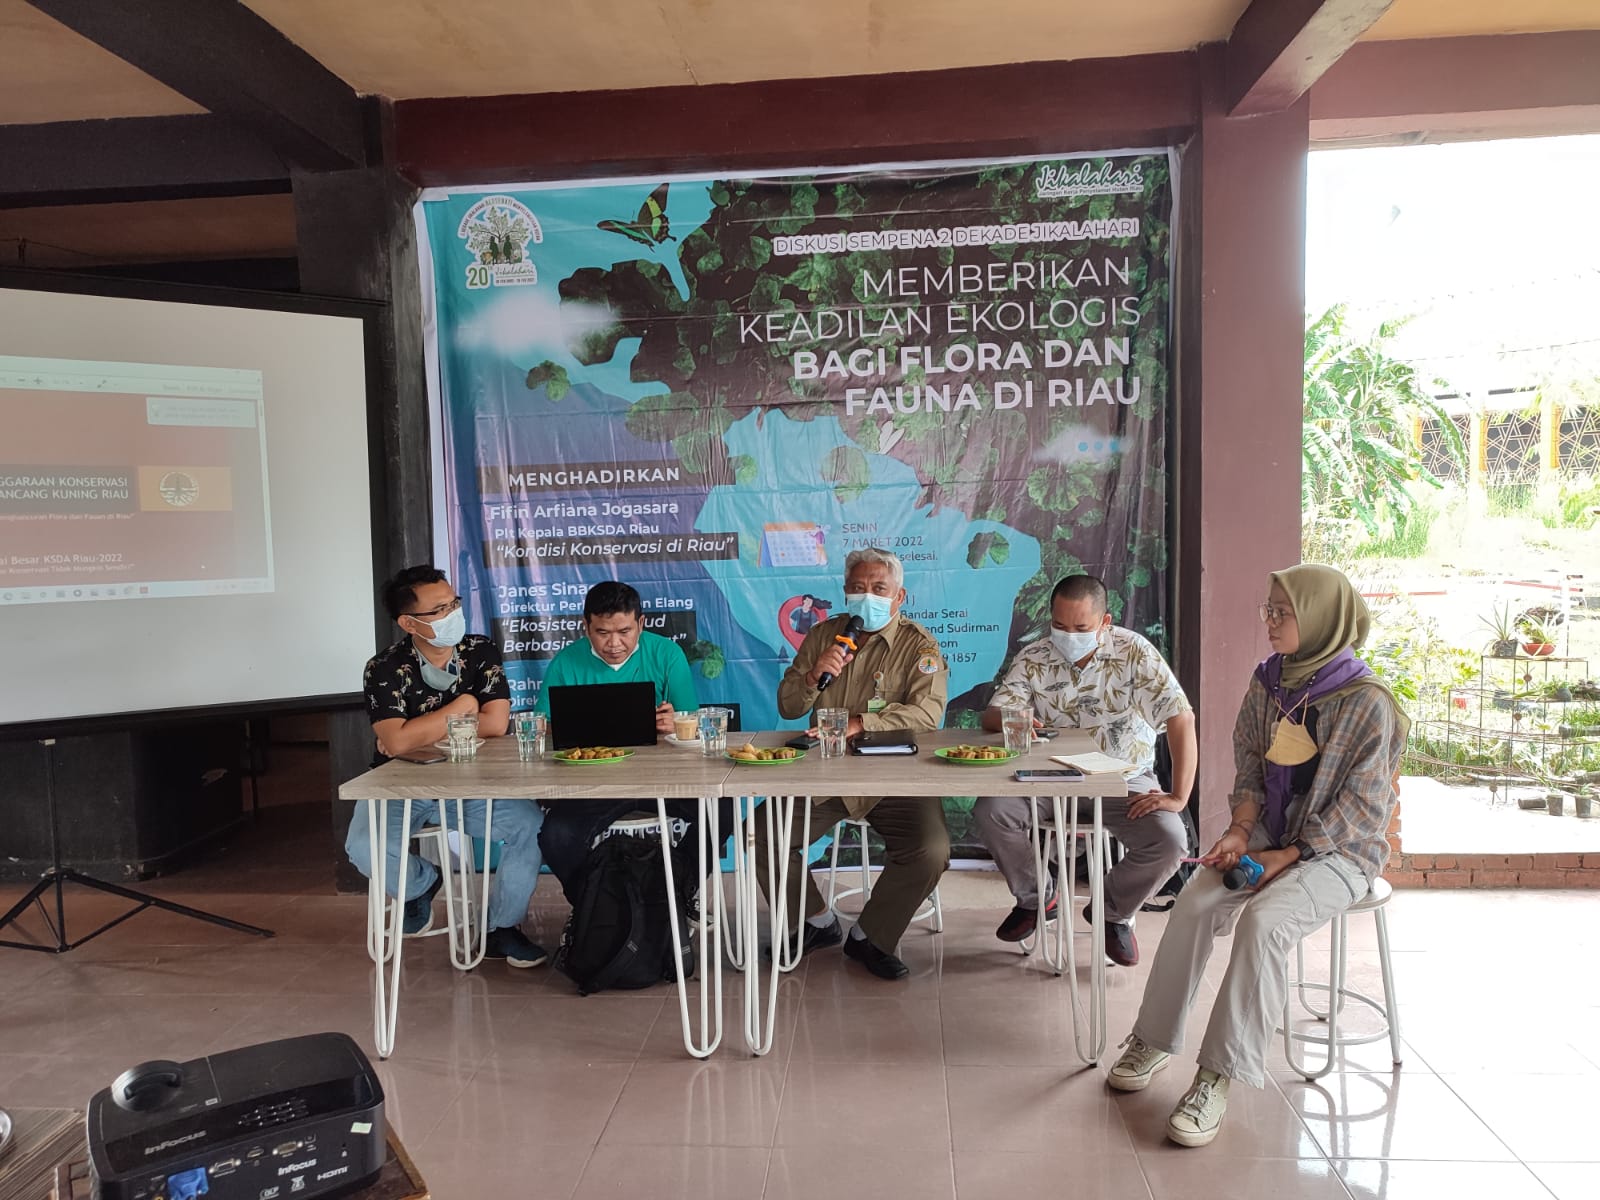 Semarak Sempena Dua Dekade, Jikalahari Adakan Diskusi Tentang Keadilan Ekologis Bagi Flora dan Fauna di Riau